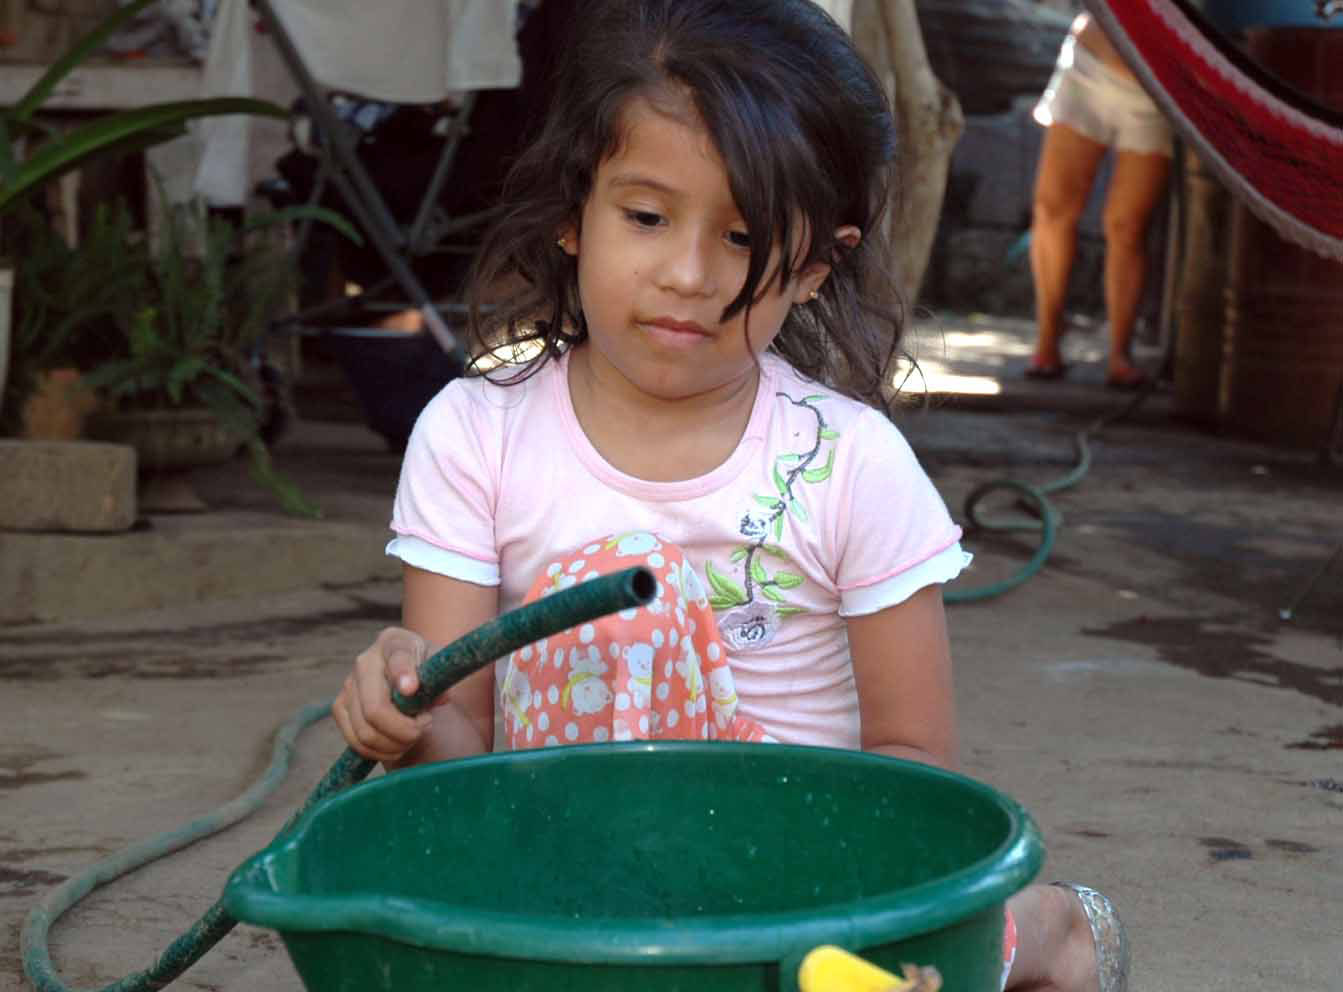 Falta de agua potable amenaza a niños más que la guerra: Unicef